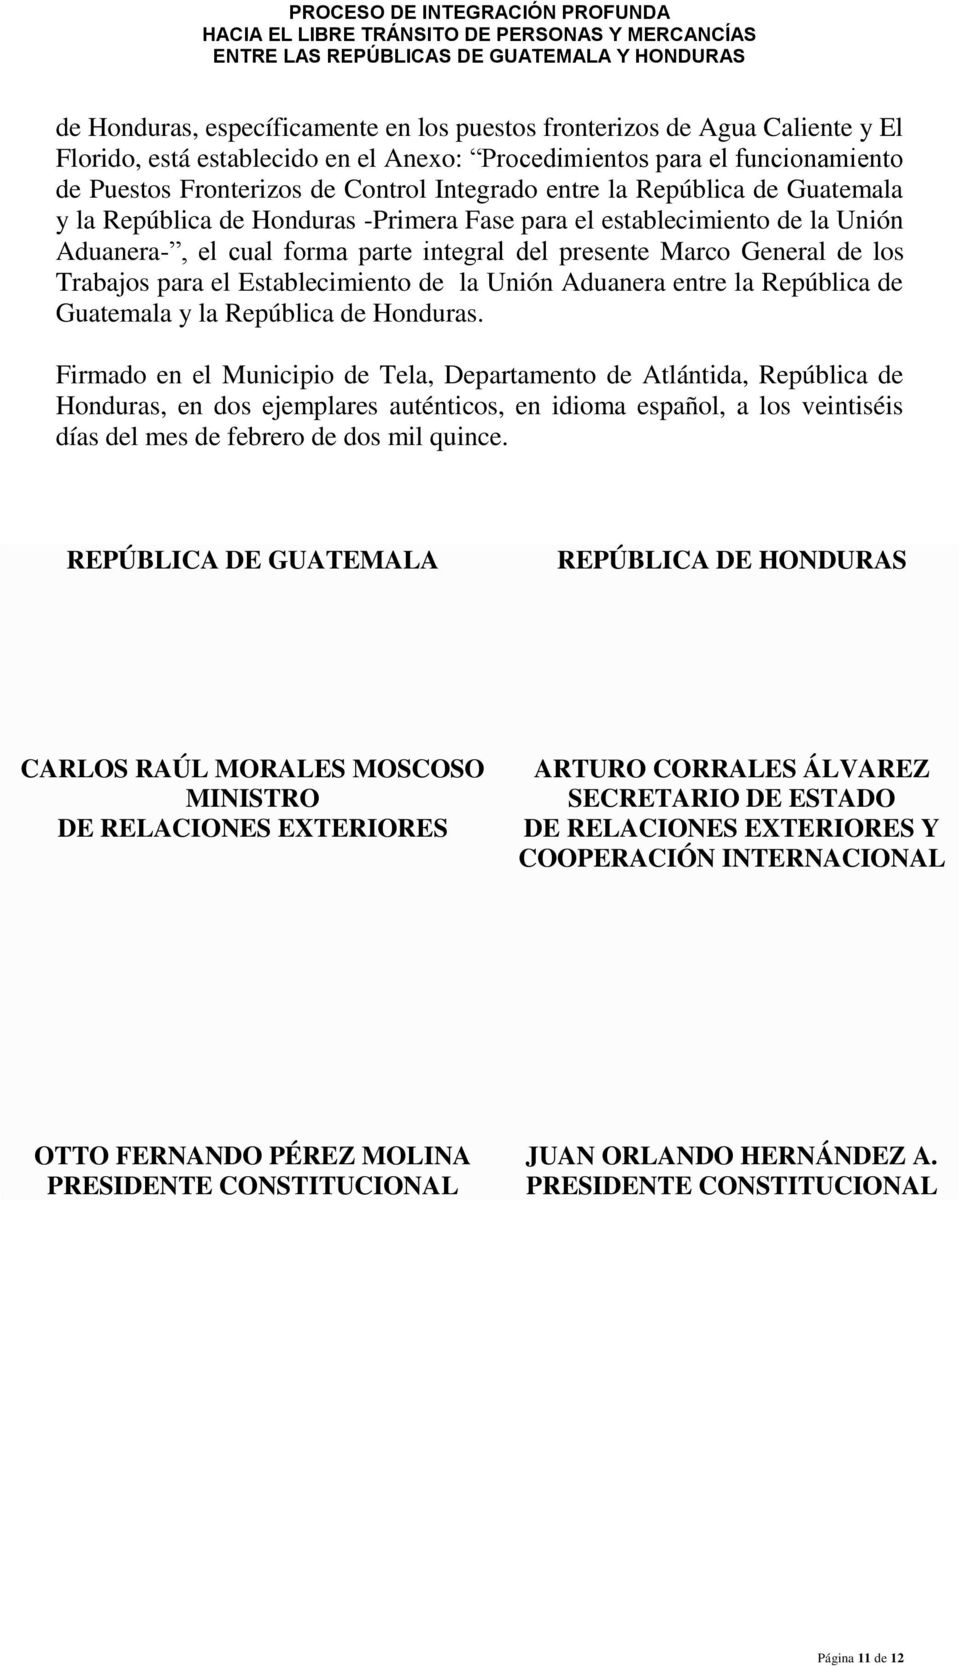 Establecimiento de la Unión Aduanera entre la República de Guatemala y la República de Honduras.